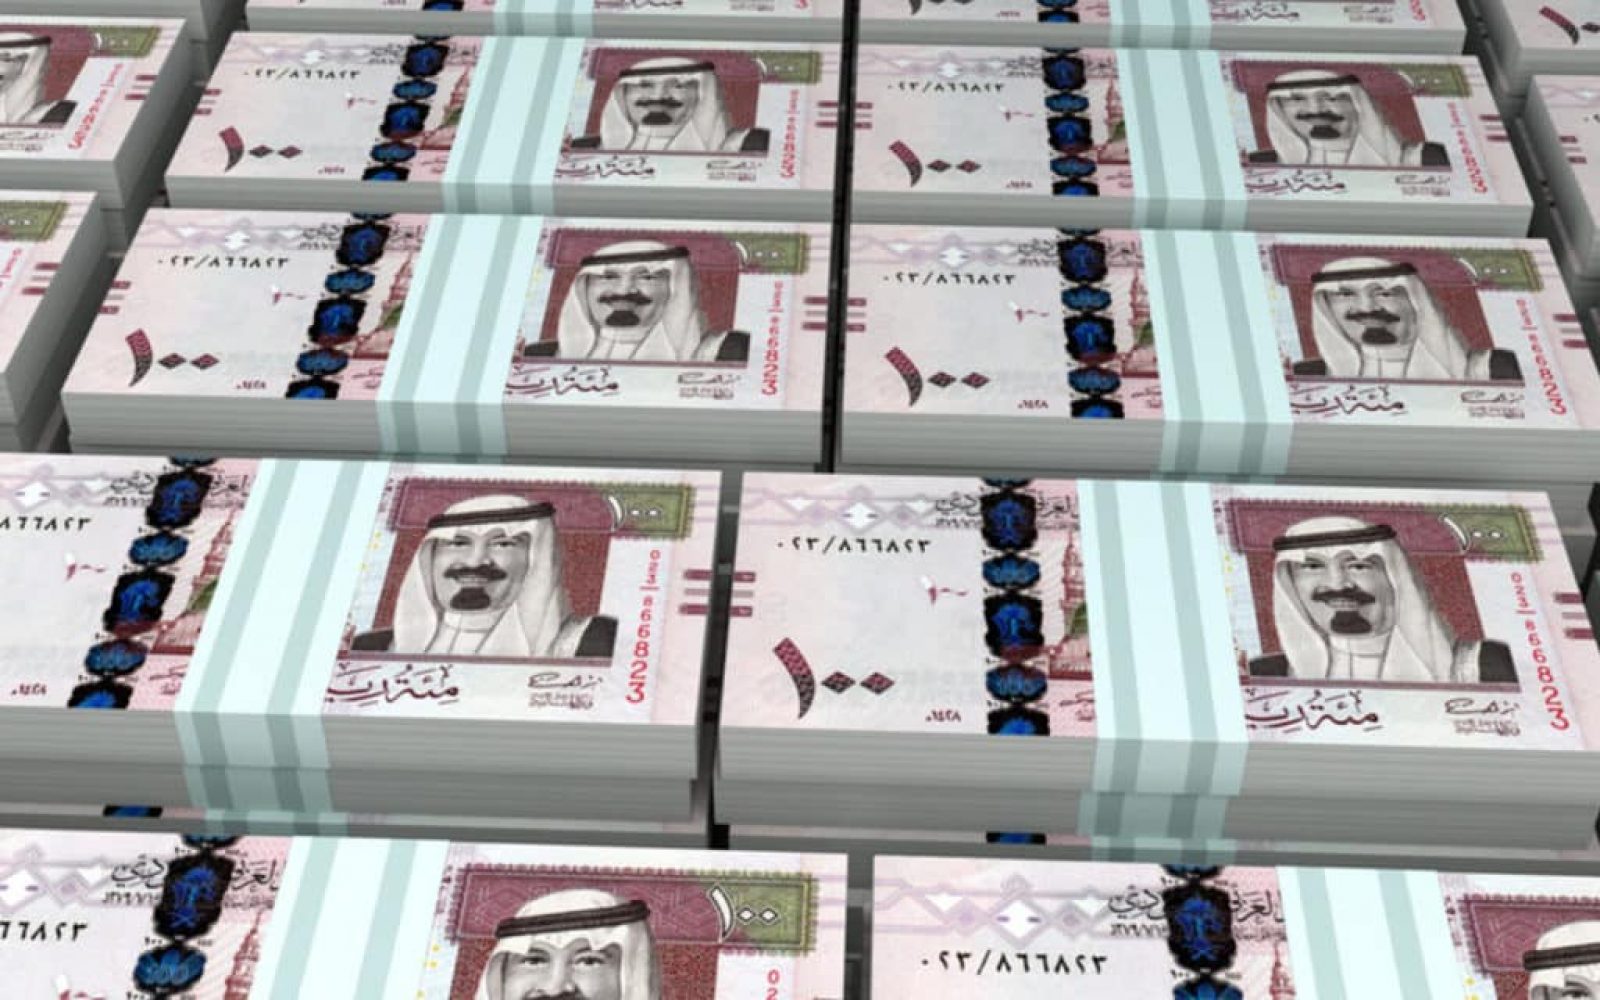 أسعار الريال السعودي في مصر الآن